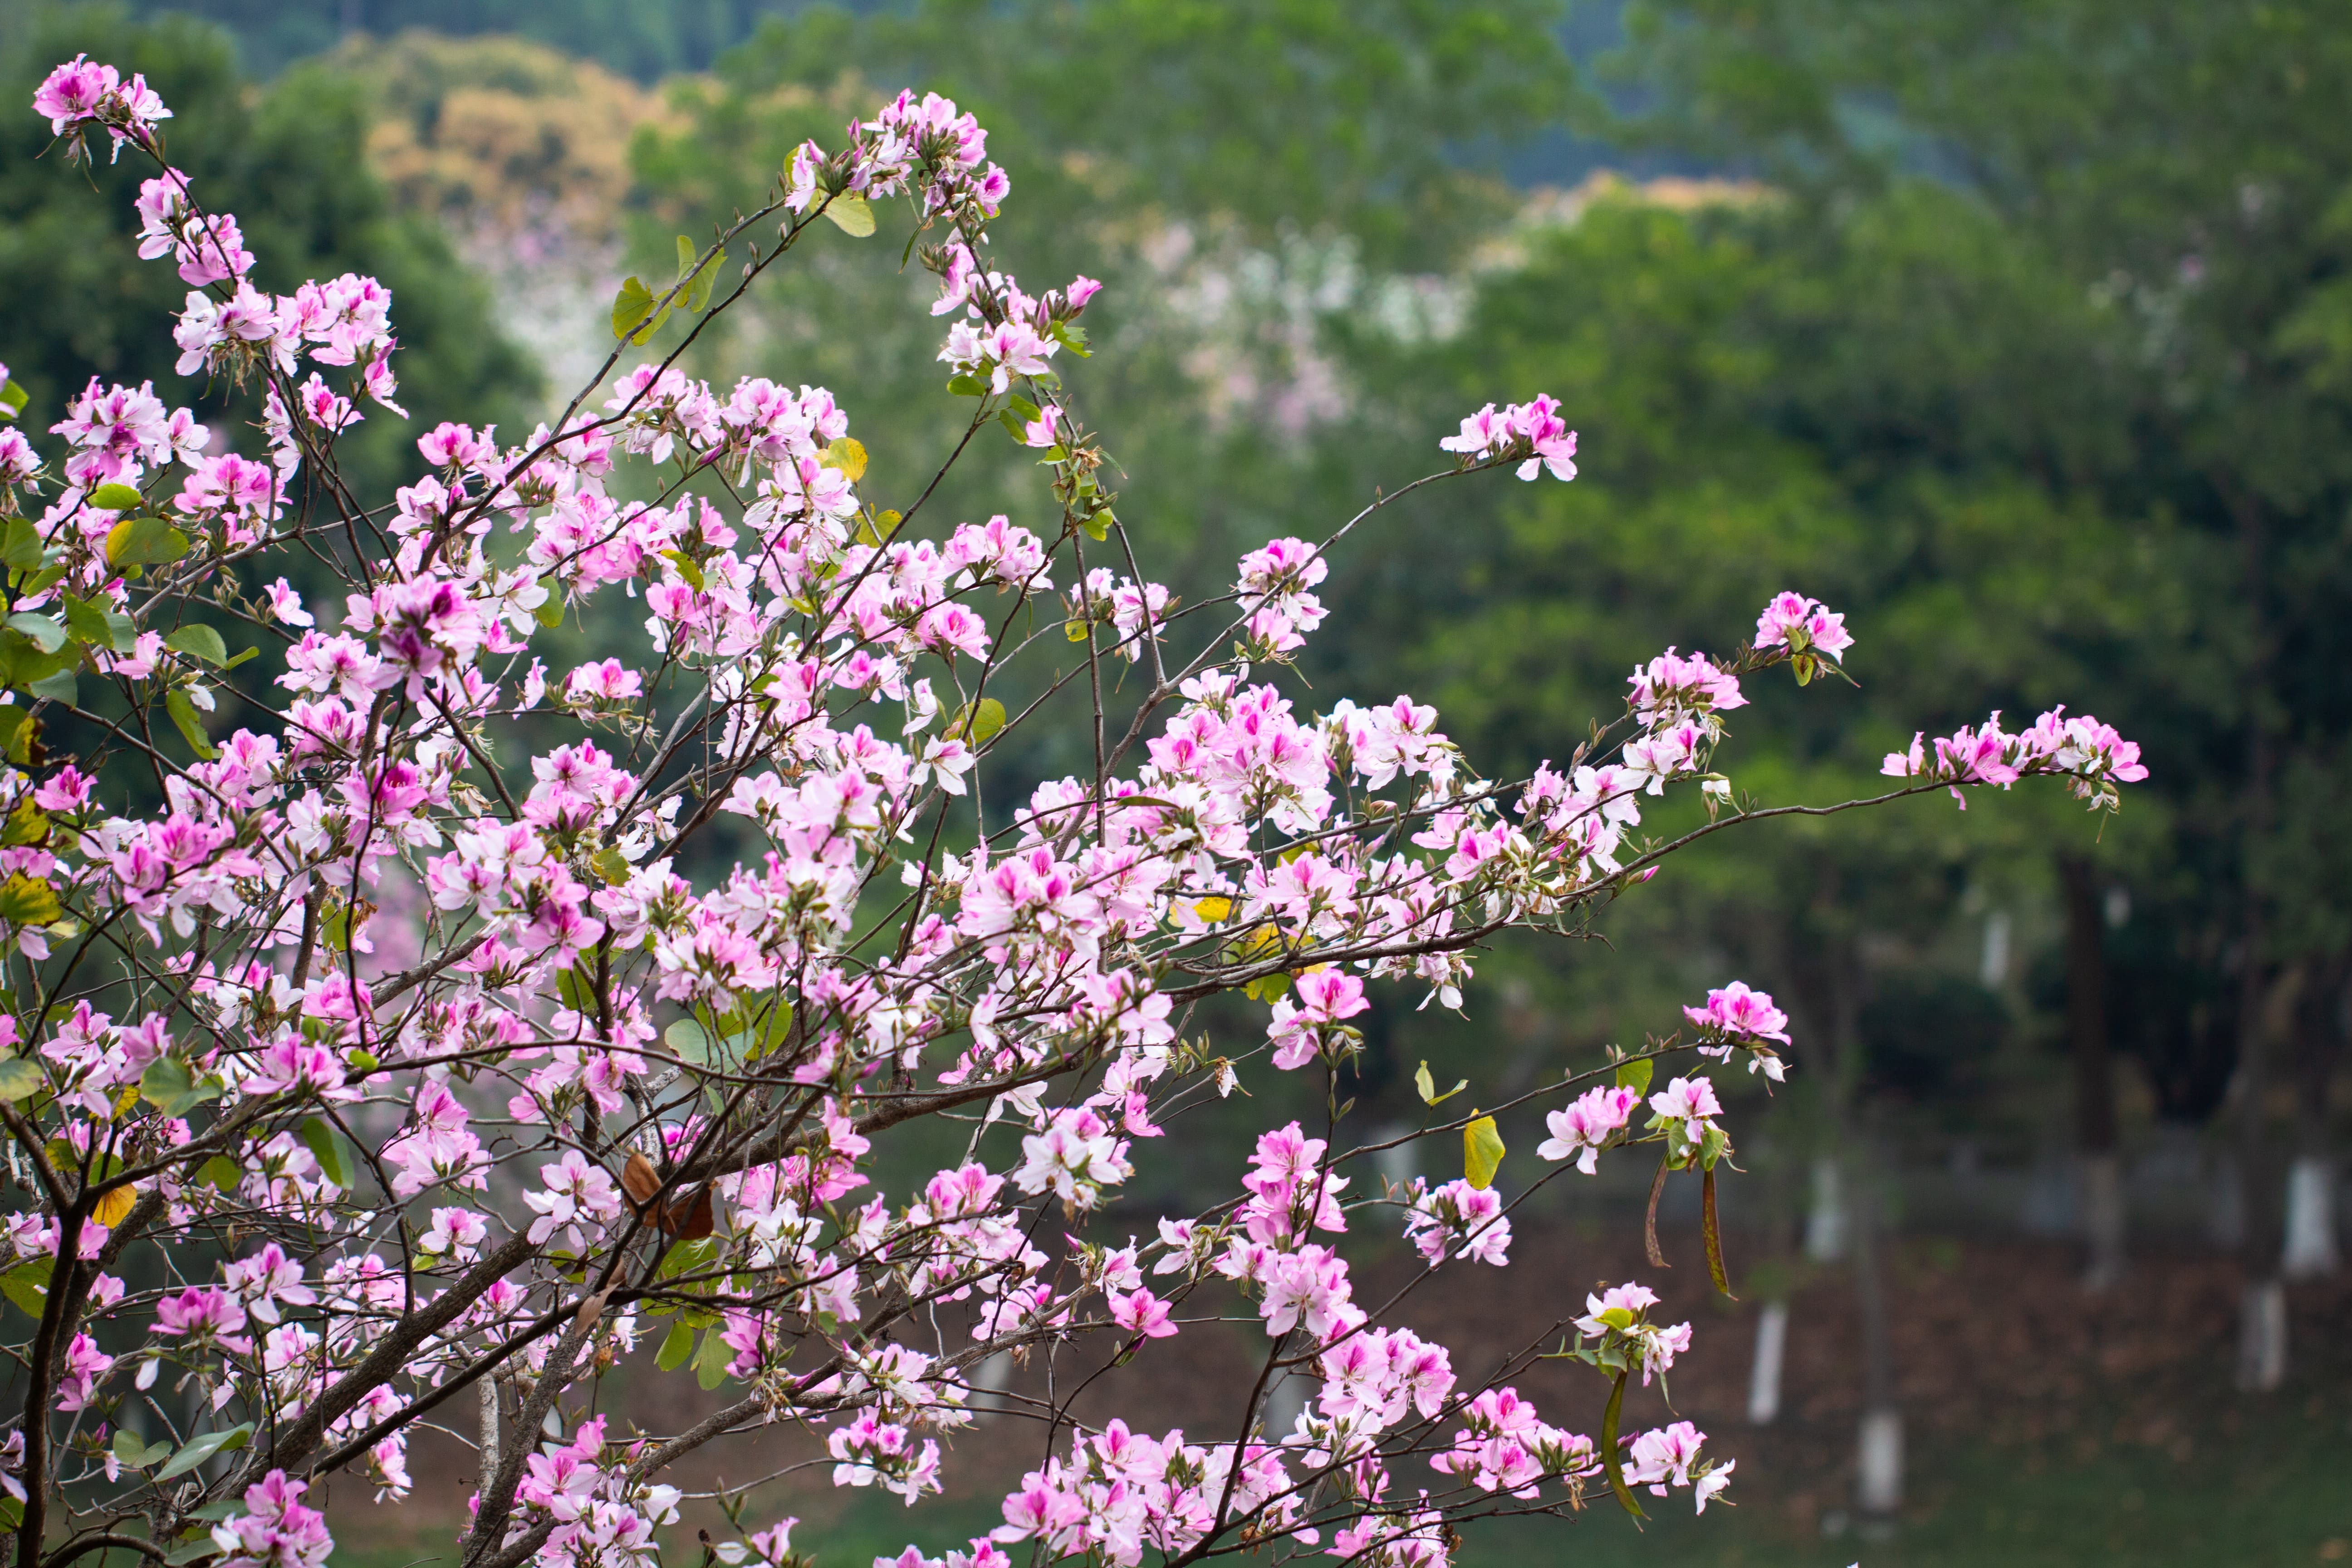 广州紫荆花最美观赏地图片